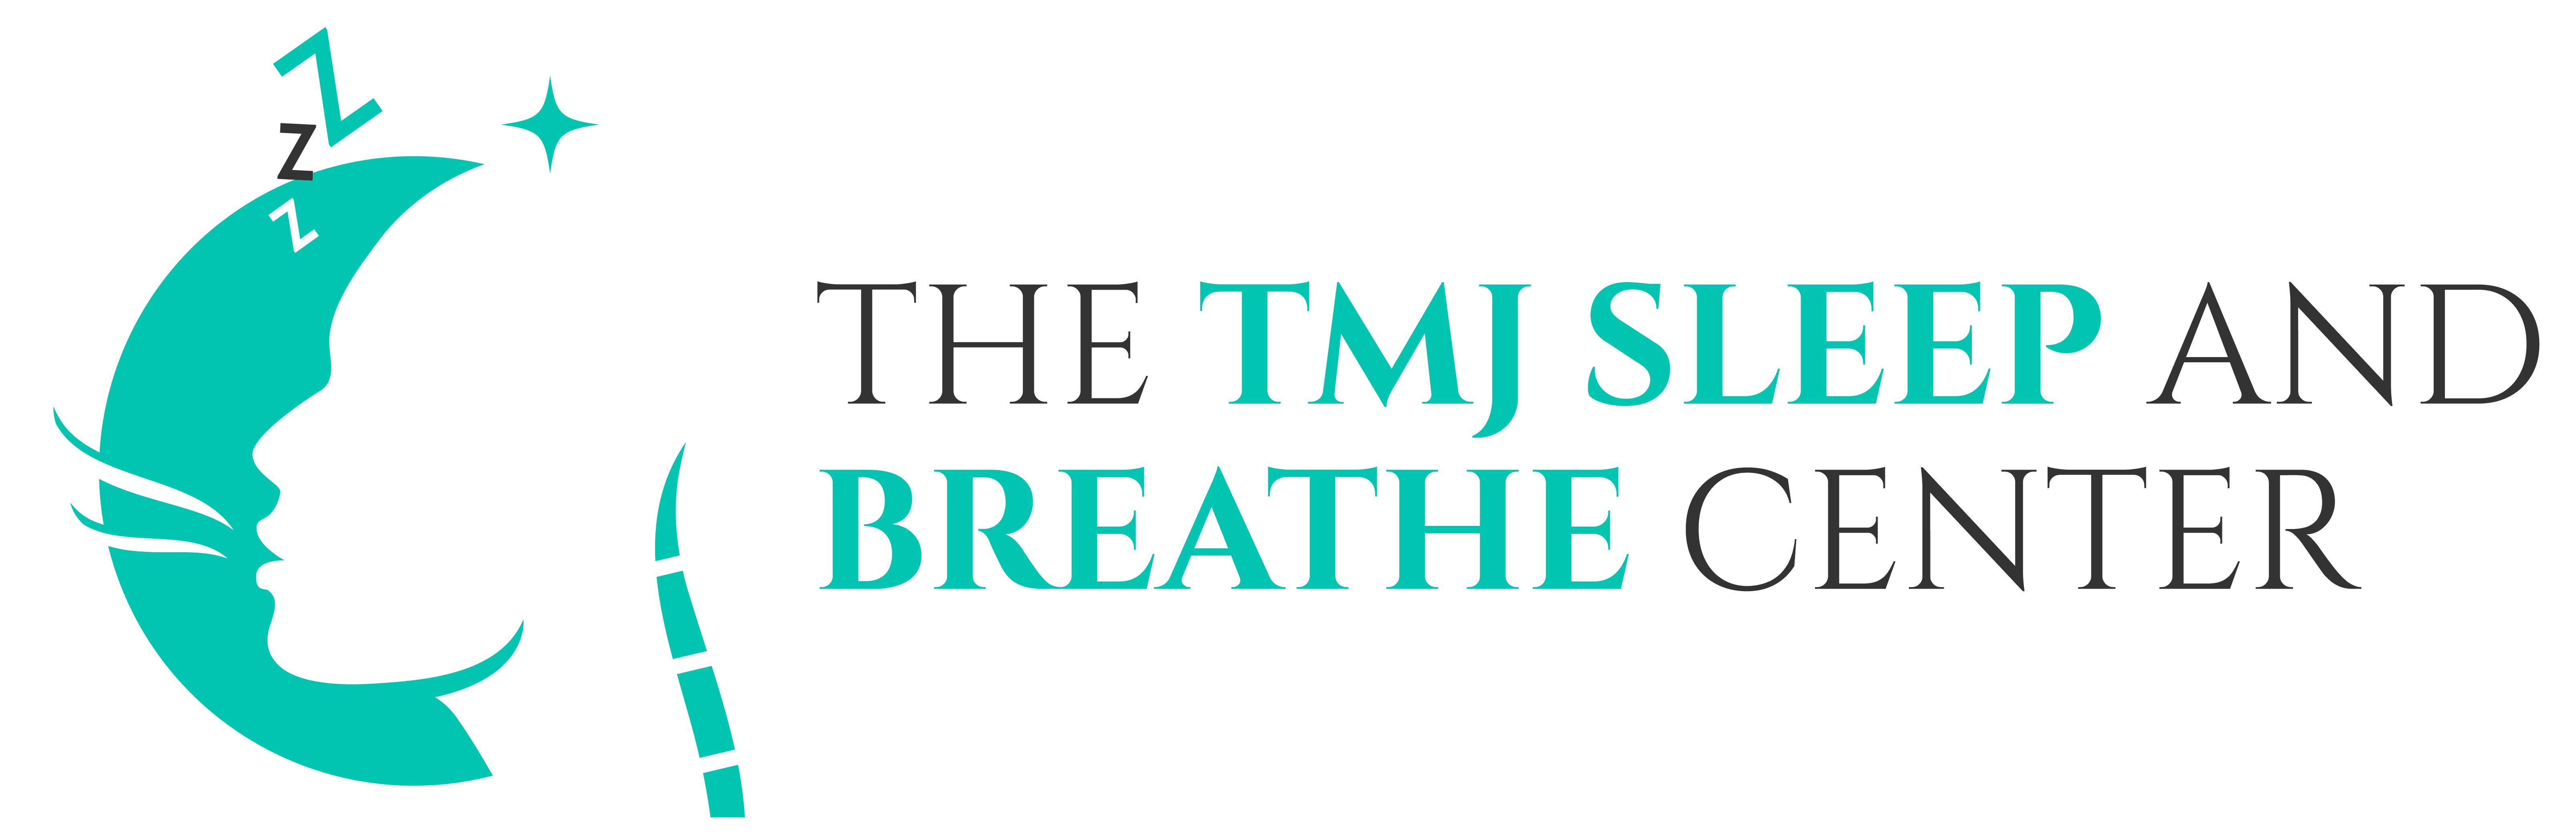 TMJ Sleep Apnea and Breathe Center